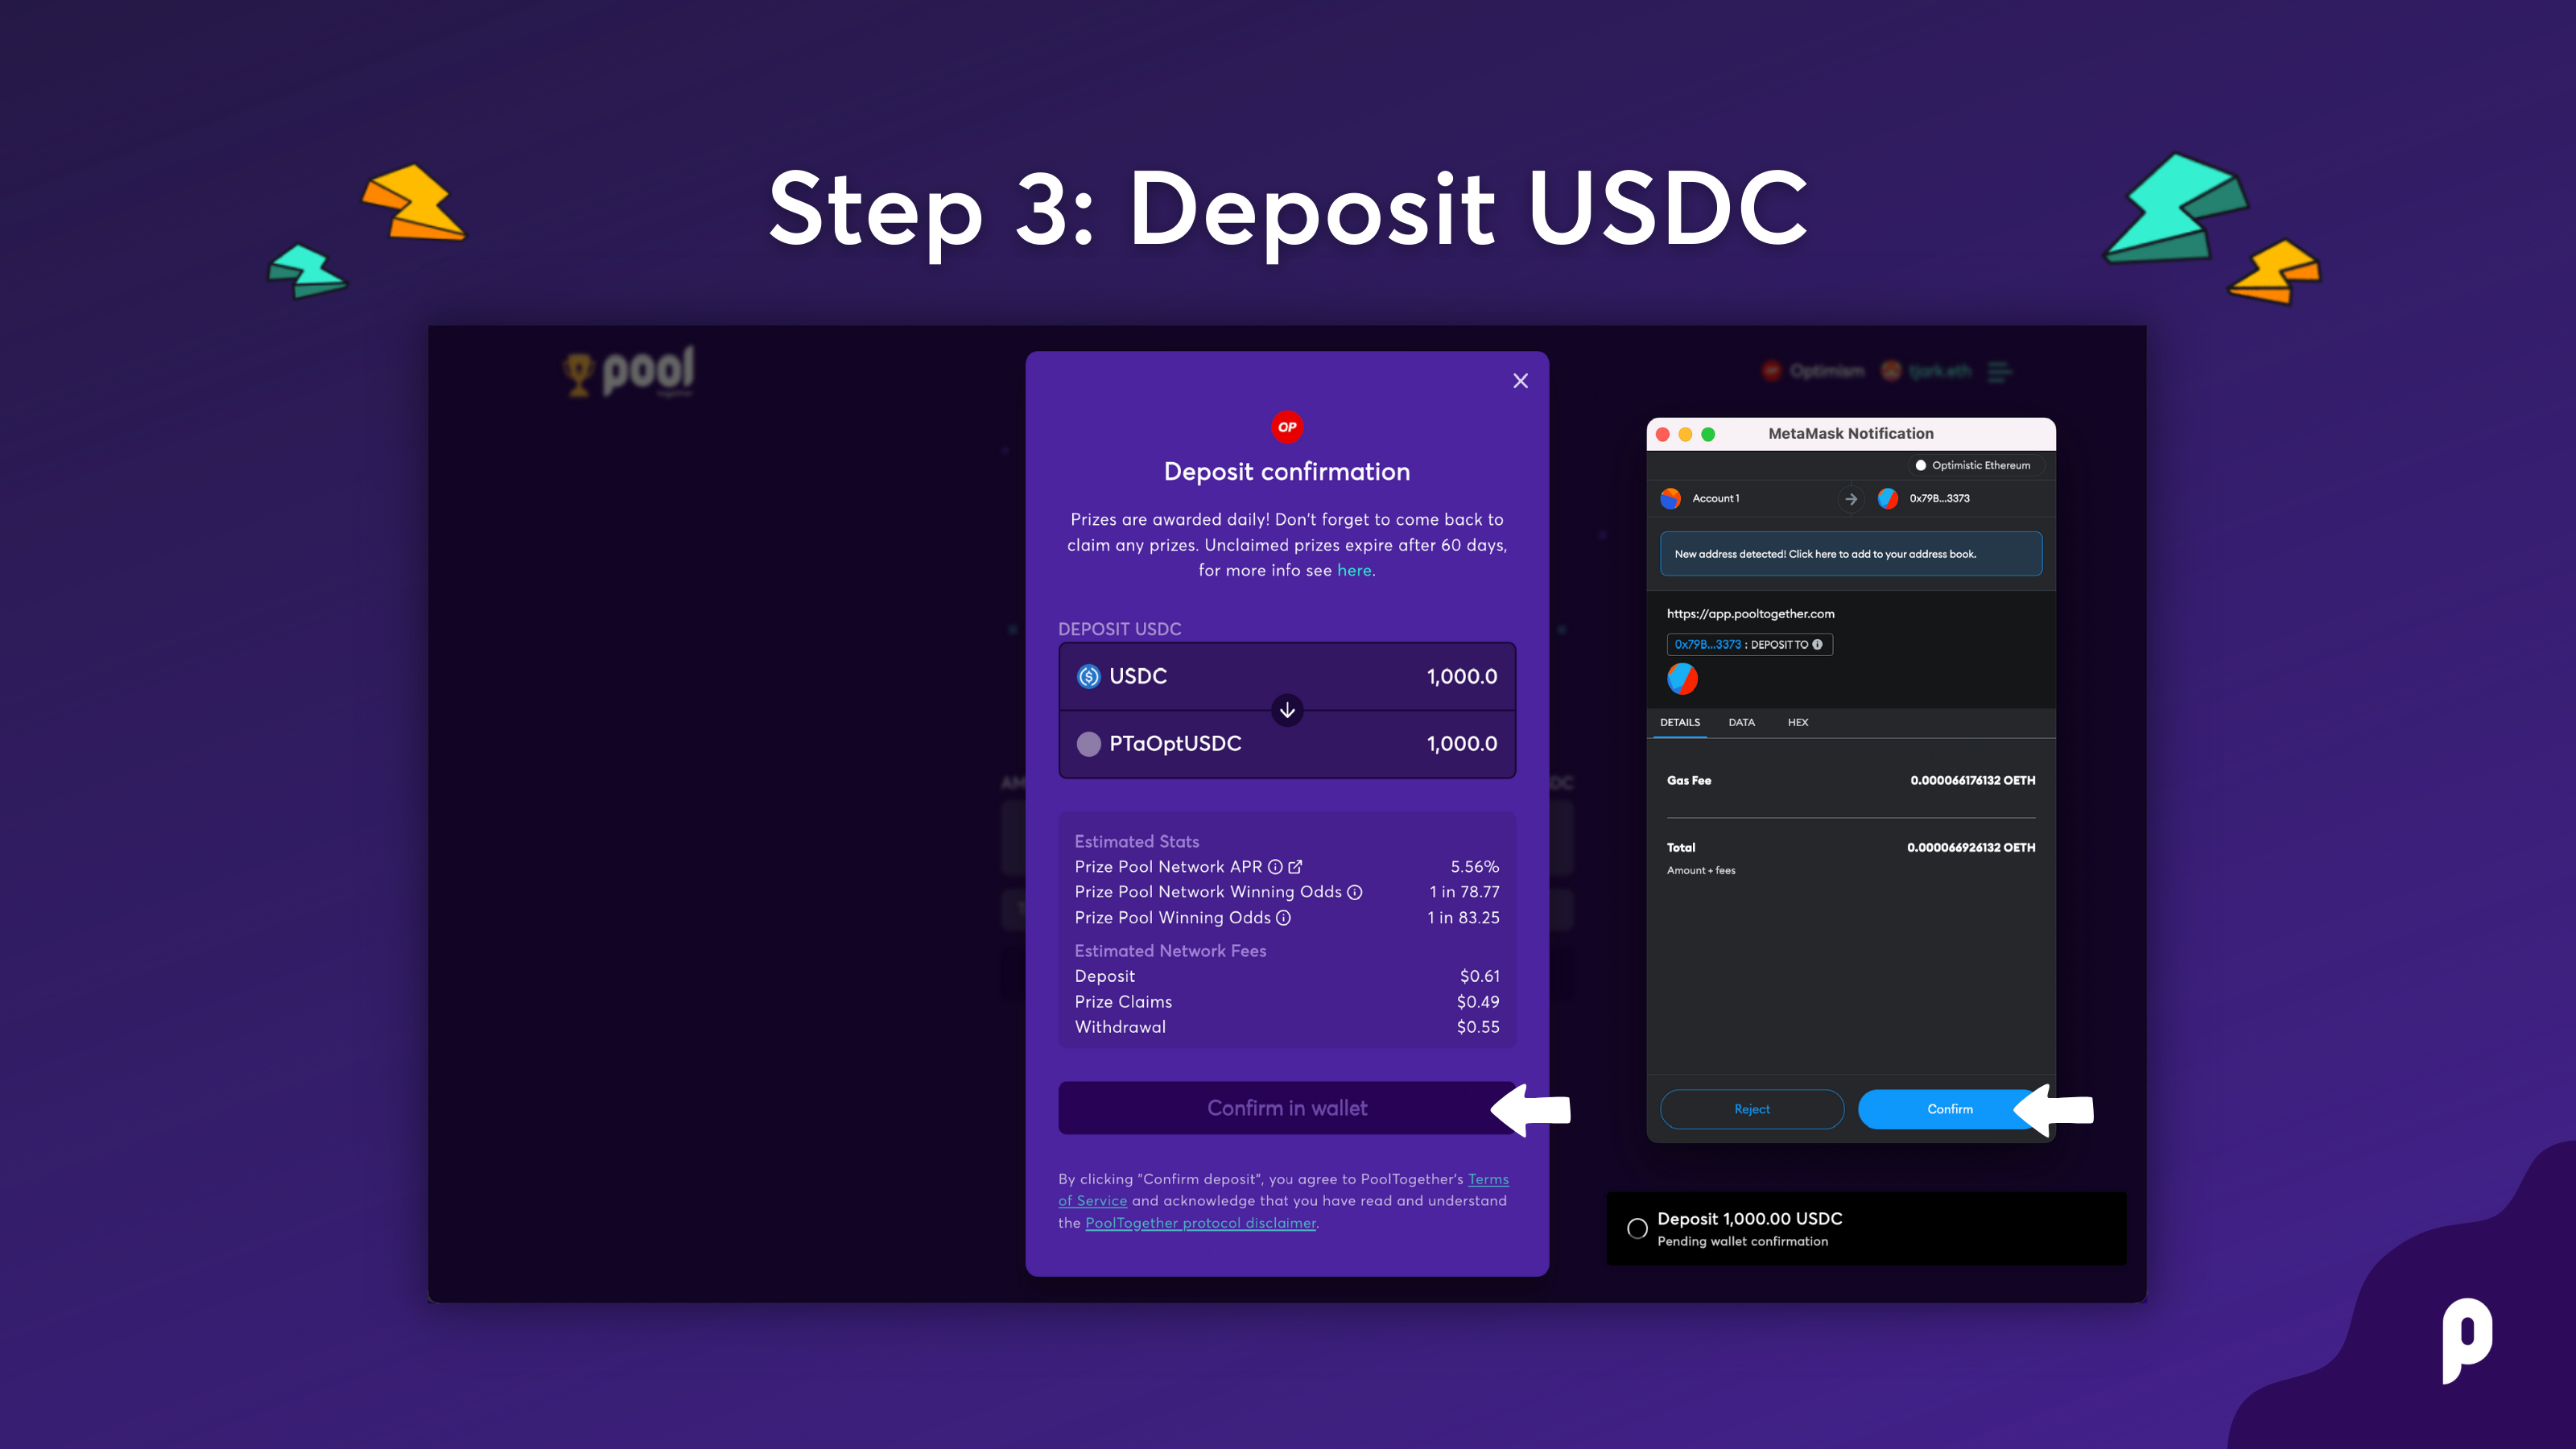 Step 3: Deposit USDC